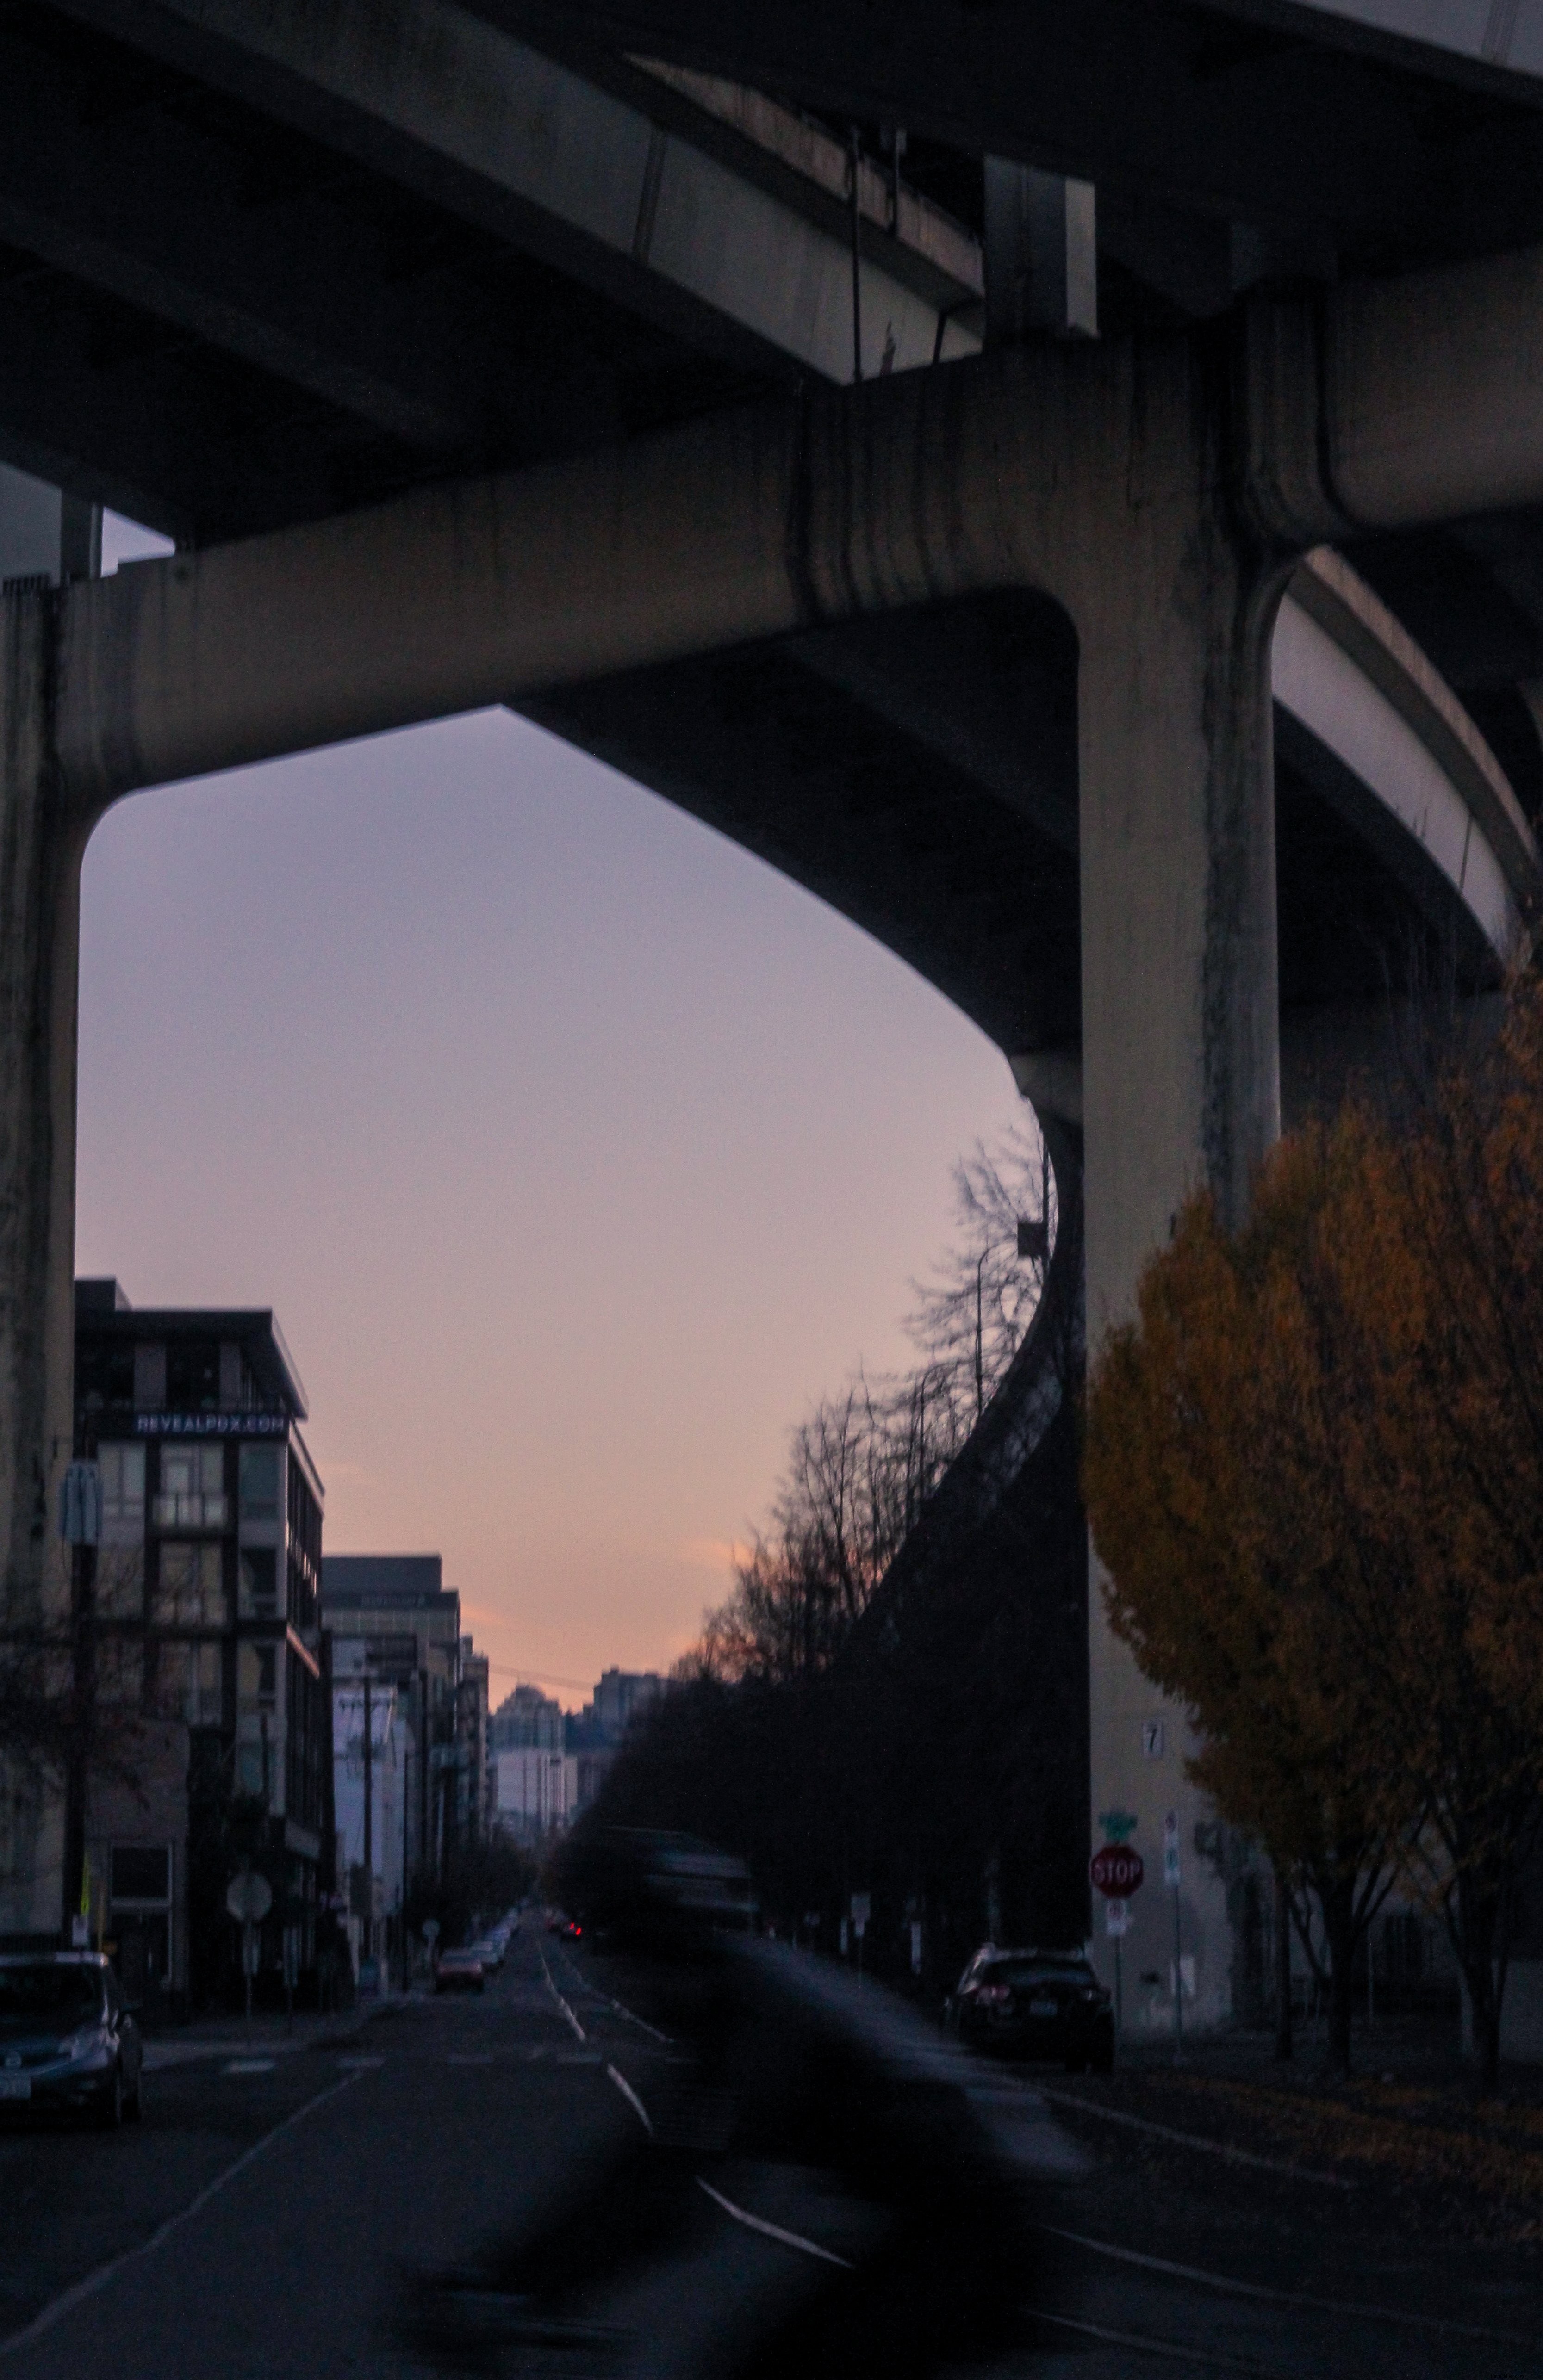 橋の下から街の建物の後ろに沈む夕日写真 